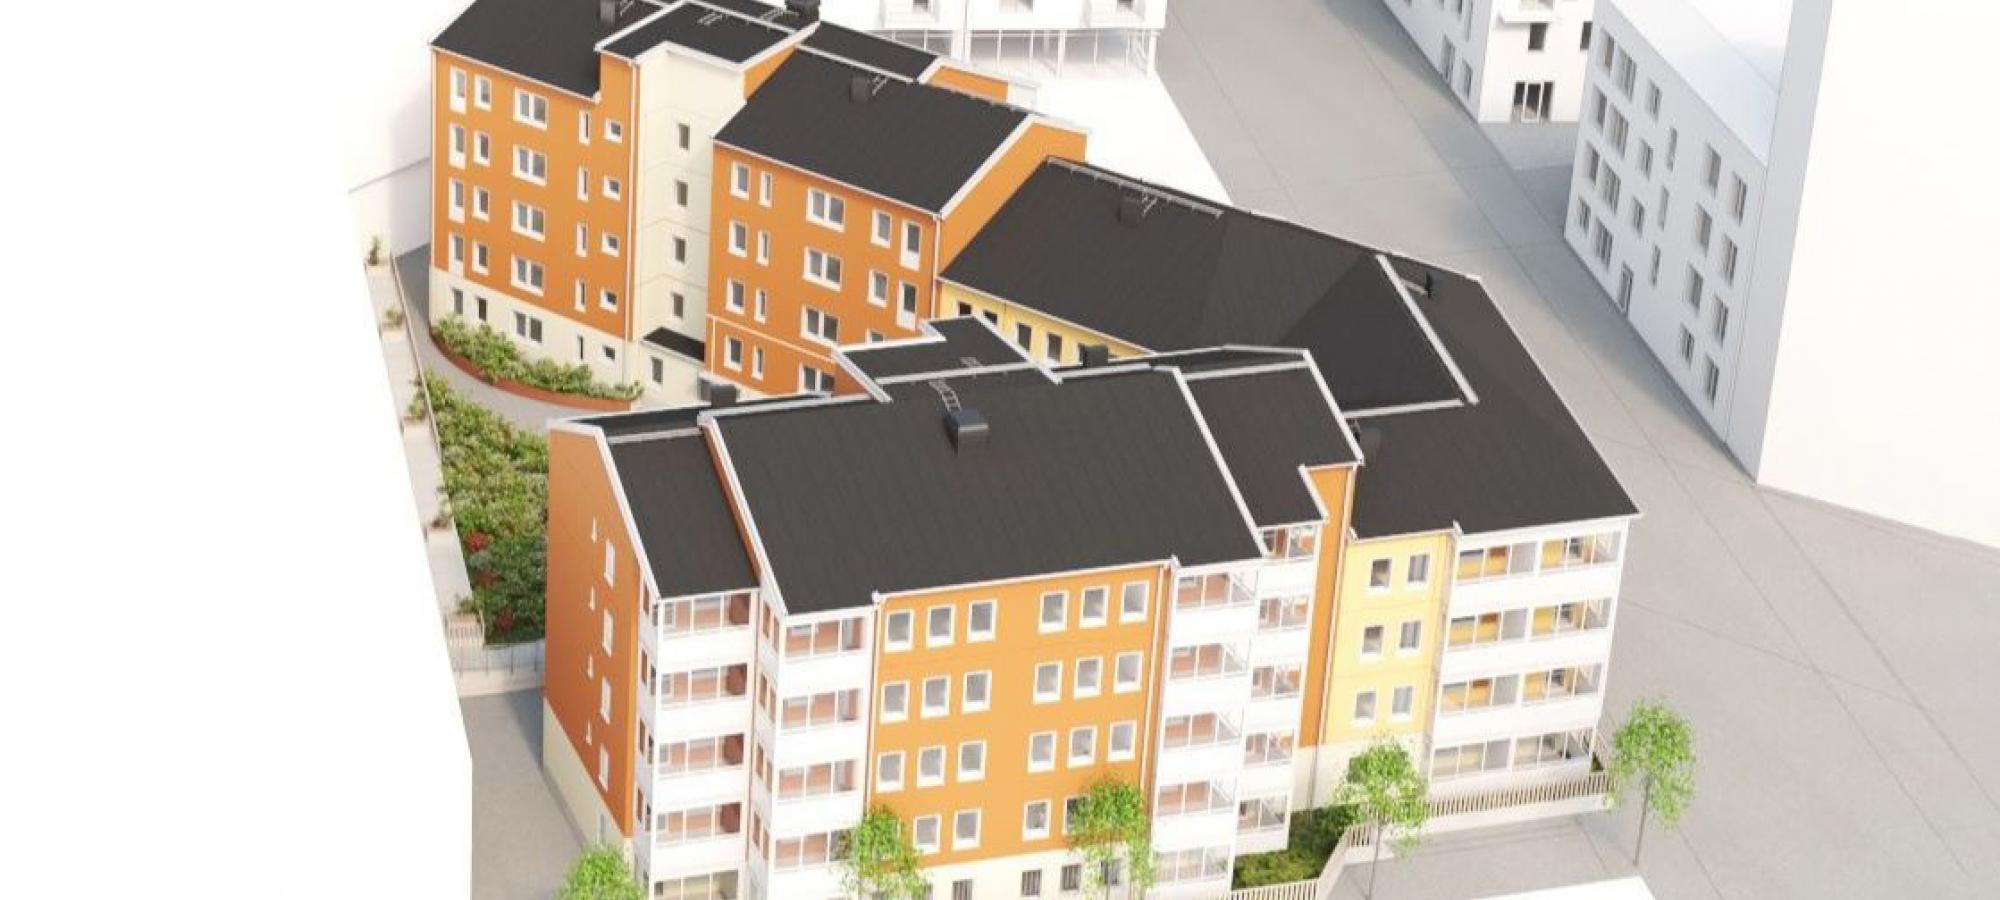 Projektet Kattvikskajen består av tre huskroppar, på sex och fyra våningar, sammankopplade till ett unikt kvartershus på ca 5600 kvm (BTA). Byggnaden är en hybrid baserad på JSB:s konceptbostäder Trygga boendet city och kvarter.